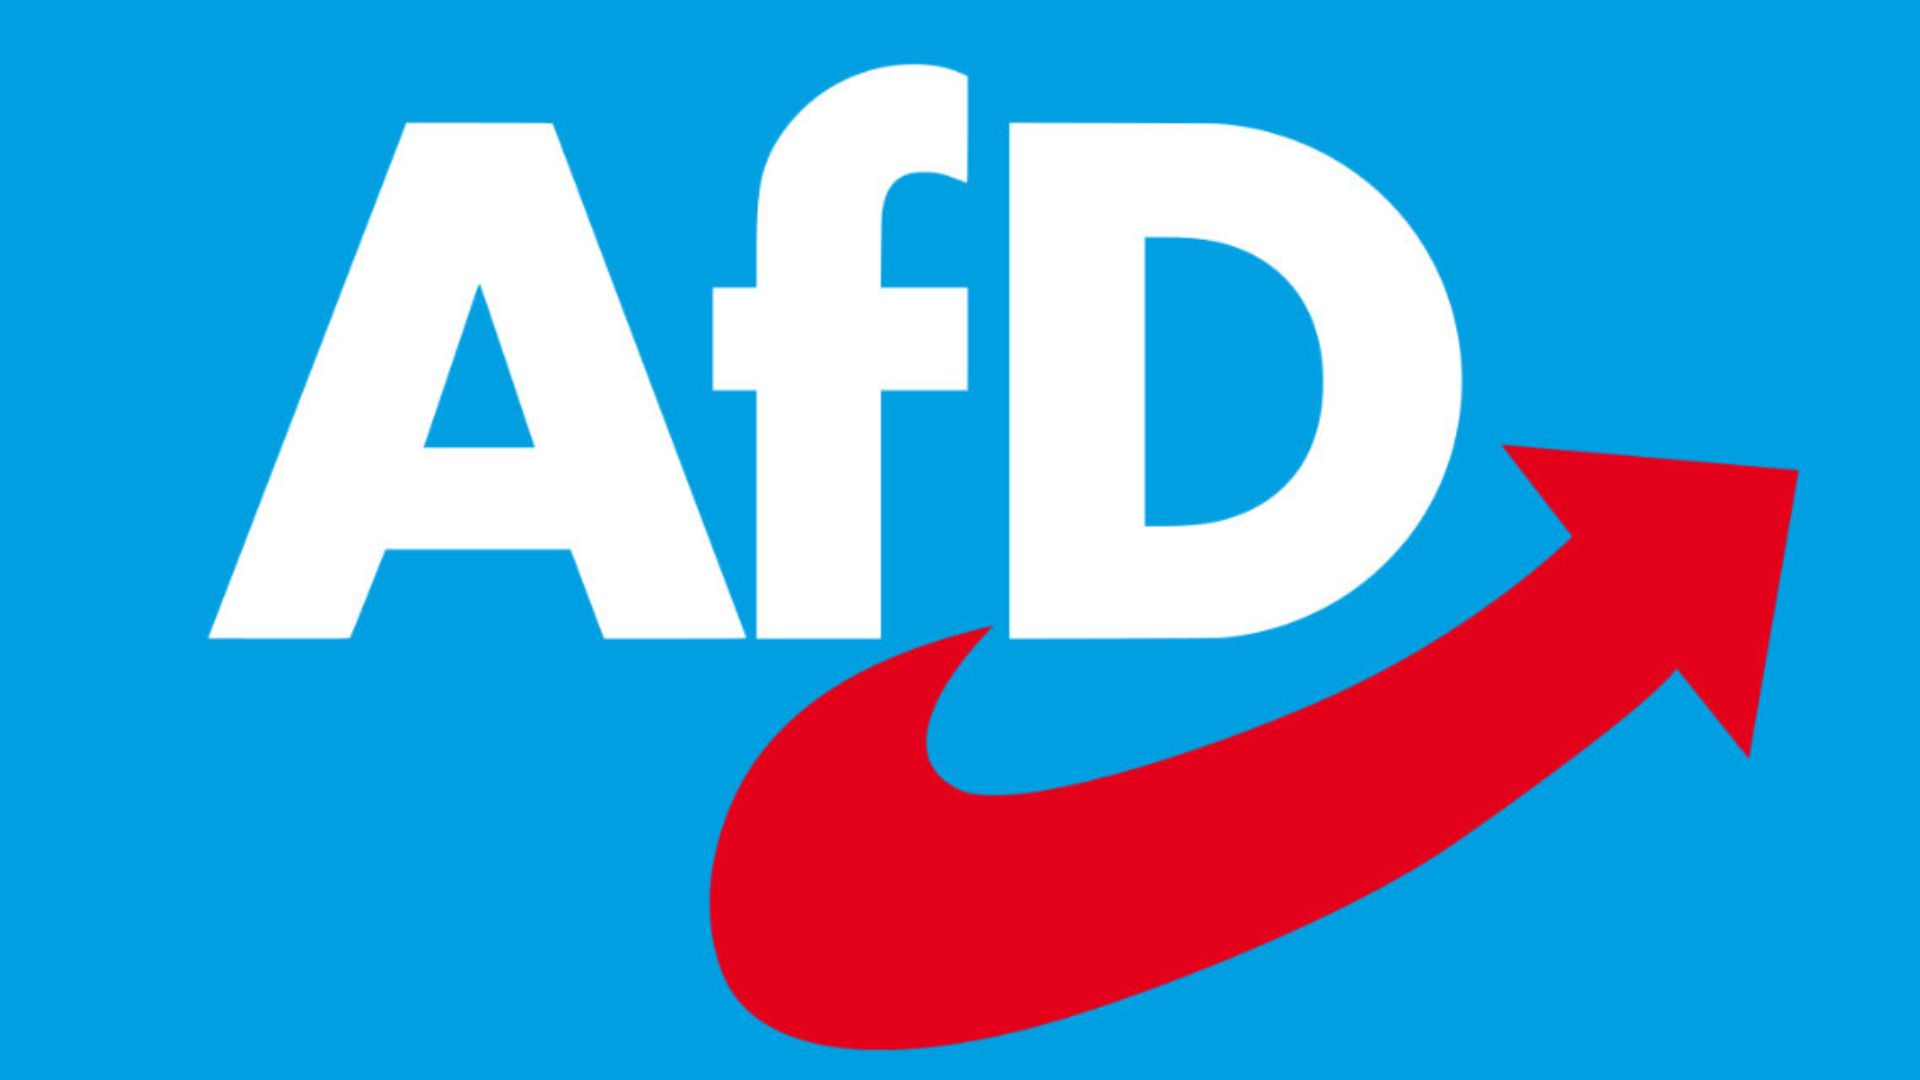 Die Buchstaben A, f und D in weißer Farbe auf blauem Hintergrund. Ein roter geschwungener Pfeil, der nach oben zeigt.